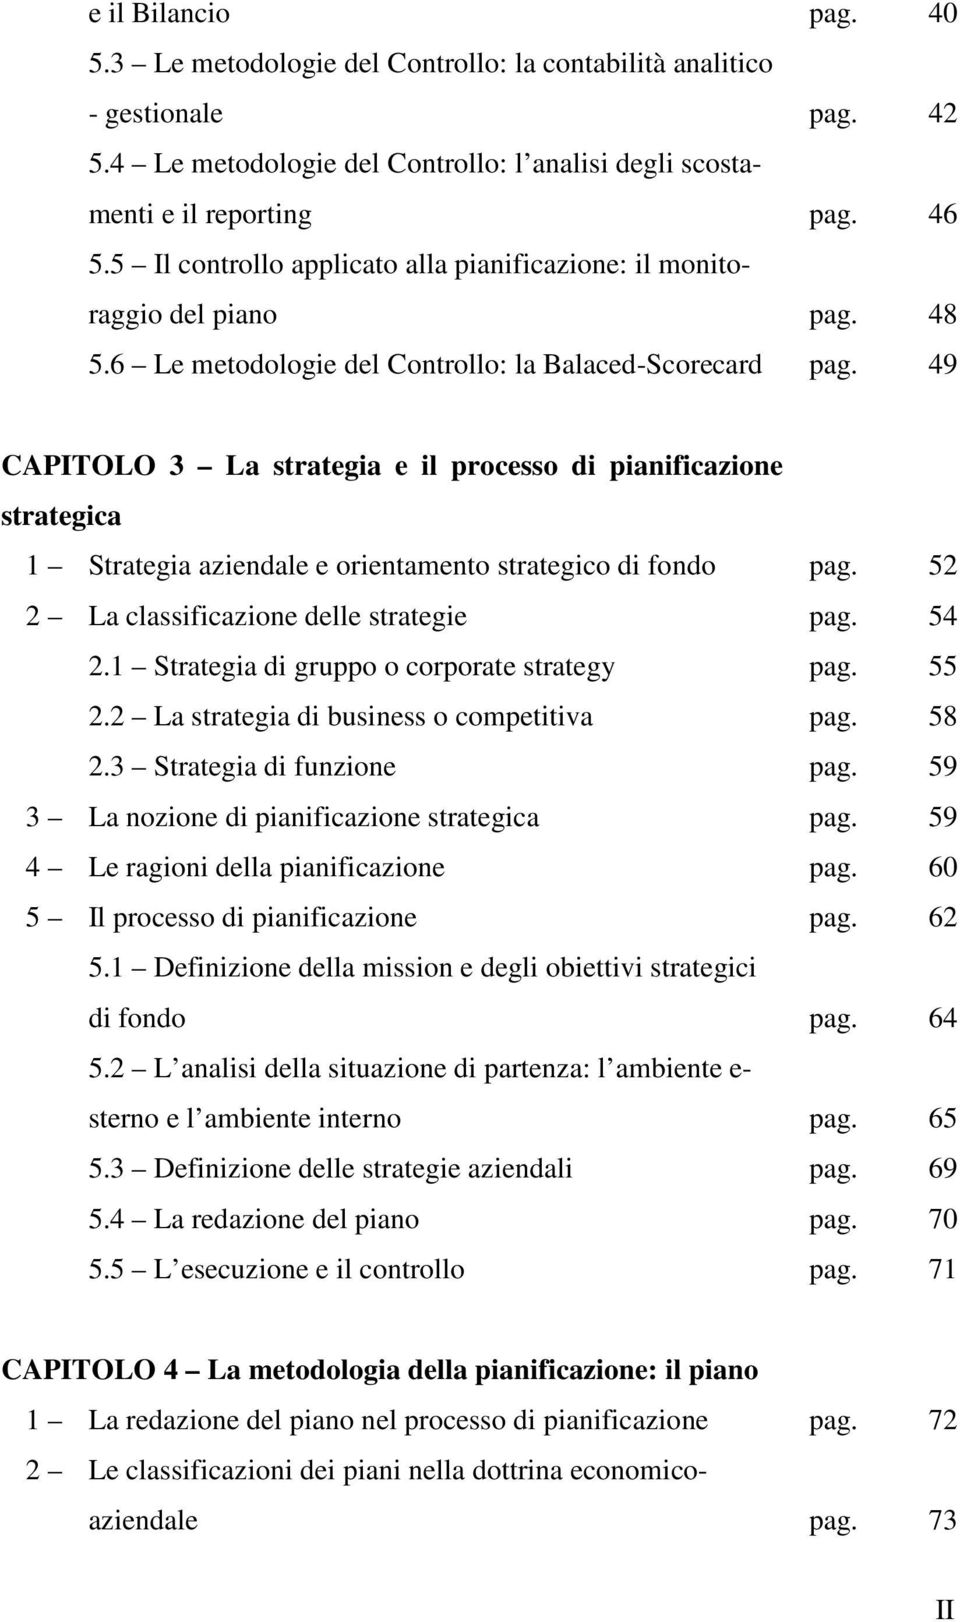 49 CAPITOLO 3 La strategia e il processo di pianificazione strategica 1 Strategia aziendale e orientamento strategico di fondo pag. 52 2 La classificazione delle strategie pag. 54 2.